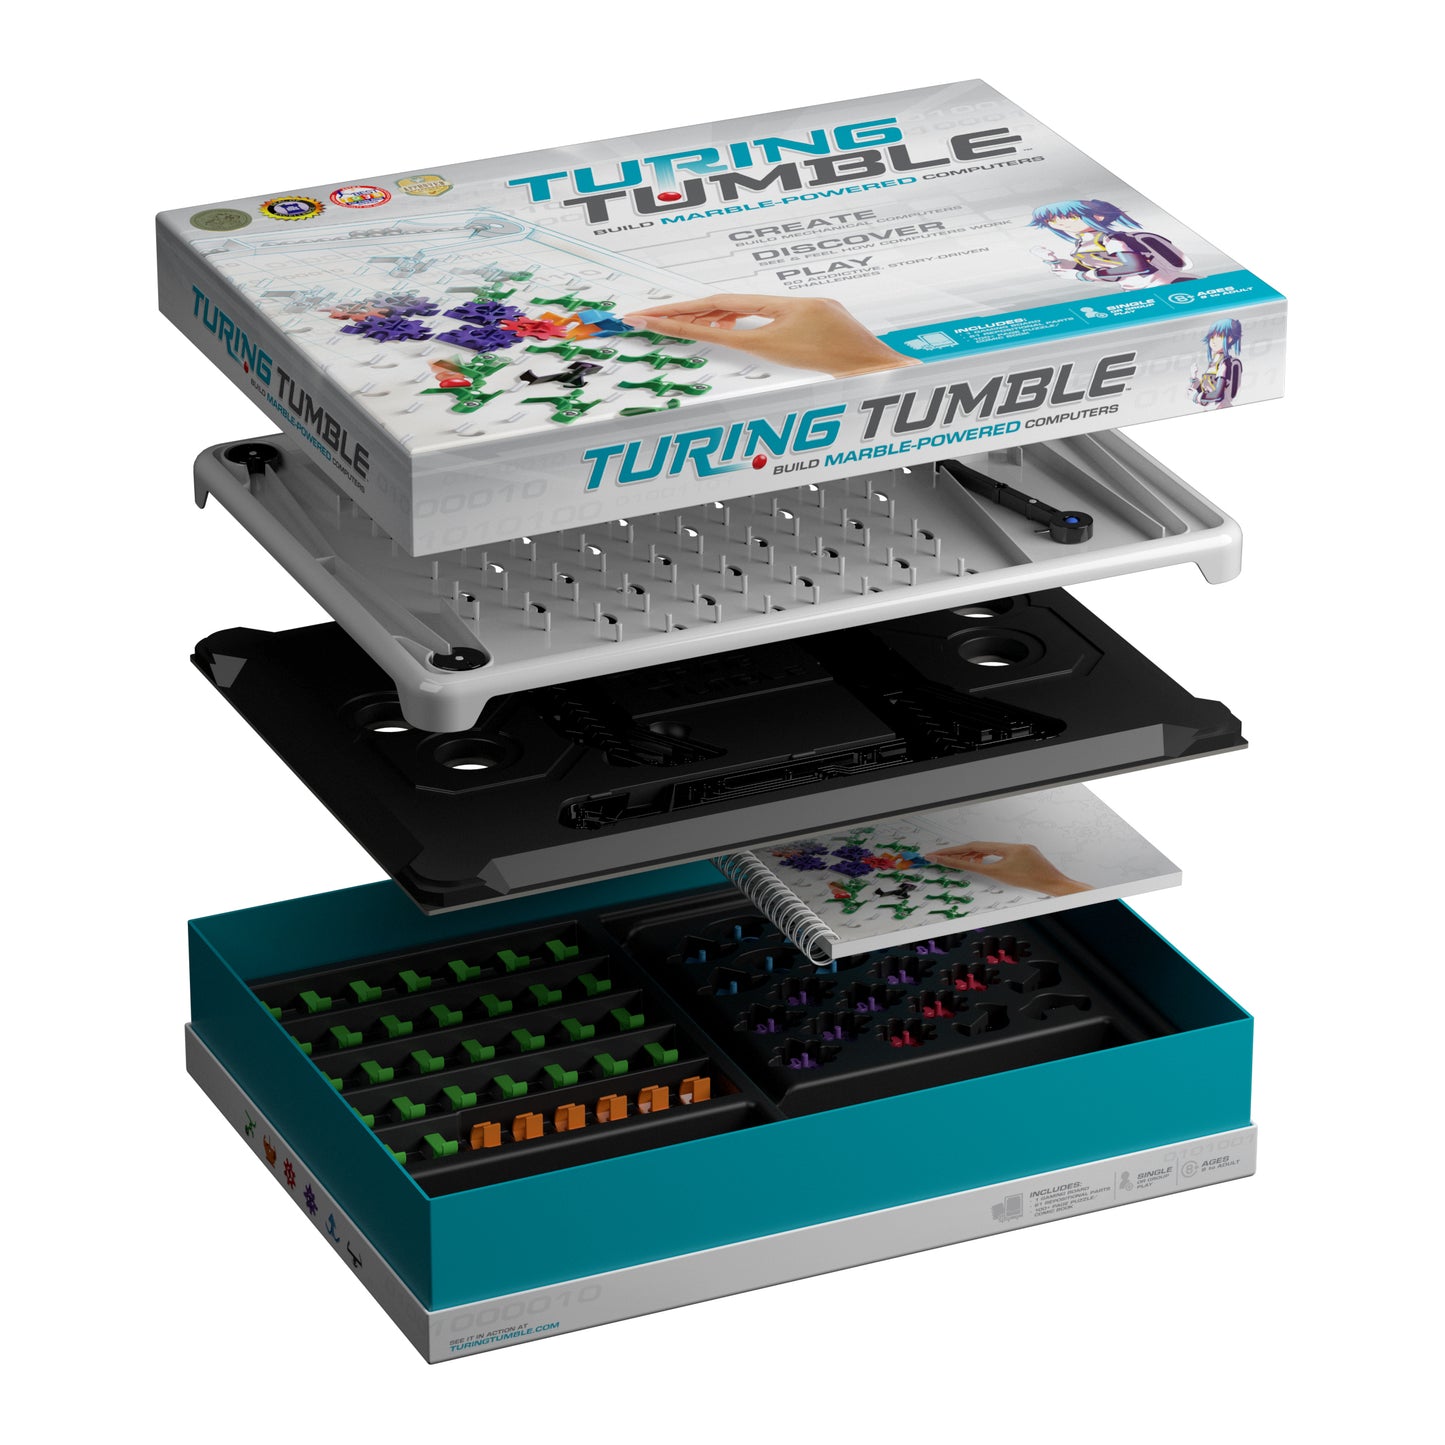 [Opened but unused items] Turing Tumble Kickstarter/Turing Tumble Kickstarter Edition 